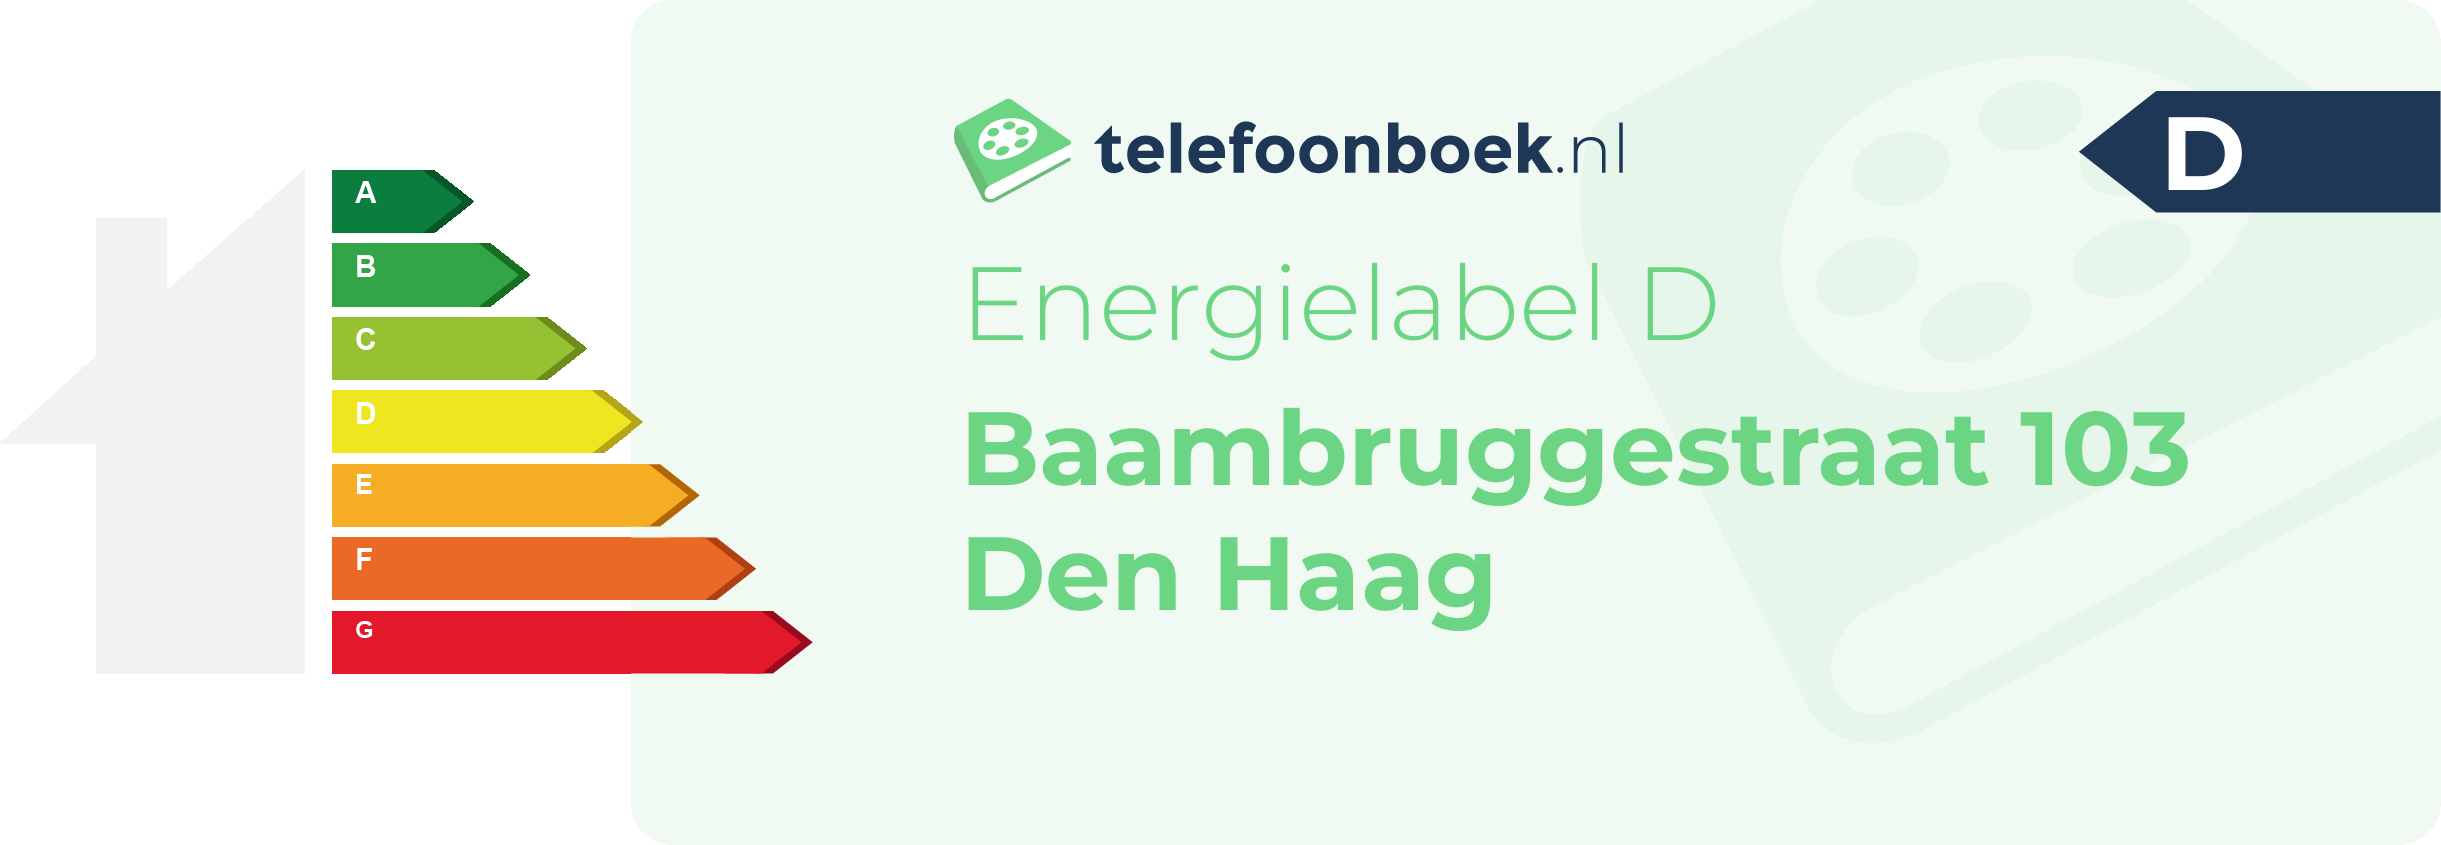 Energielabel Baambruggestraat 103 Den Haag